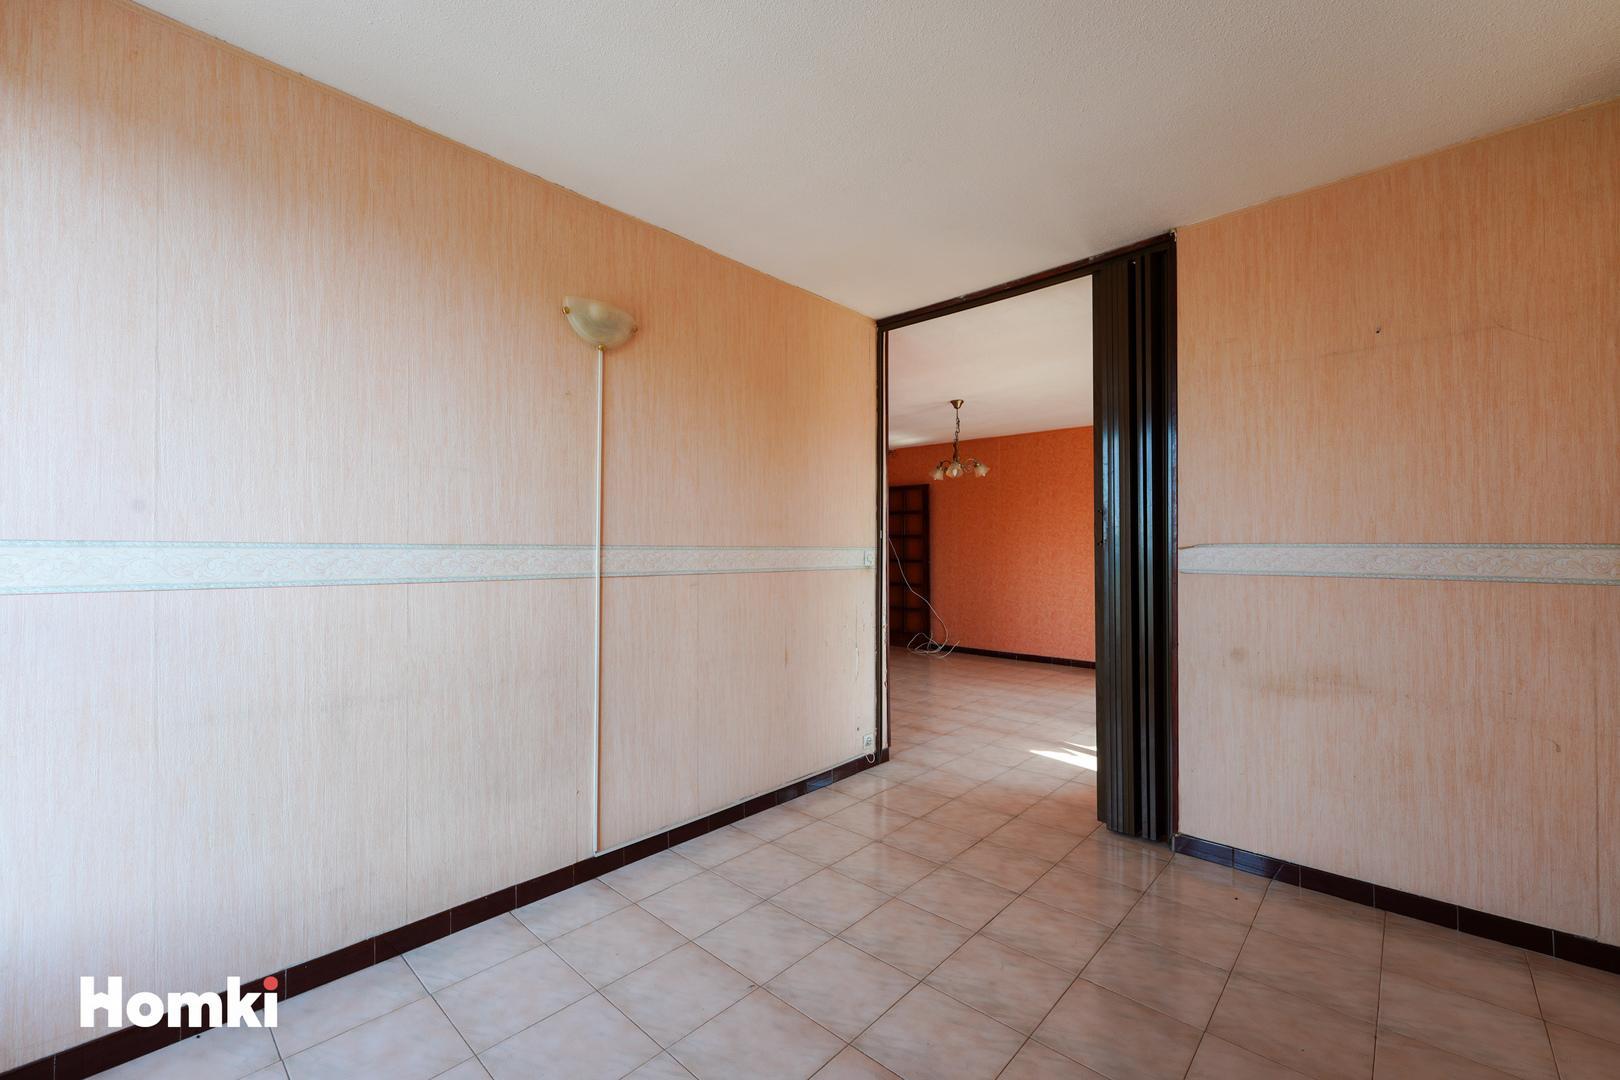 Homki - Vente Appartement  de 78.0 m² à Marignane 13700